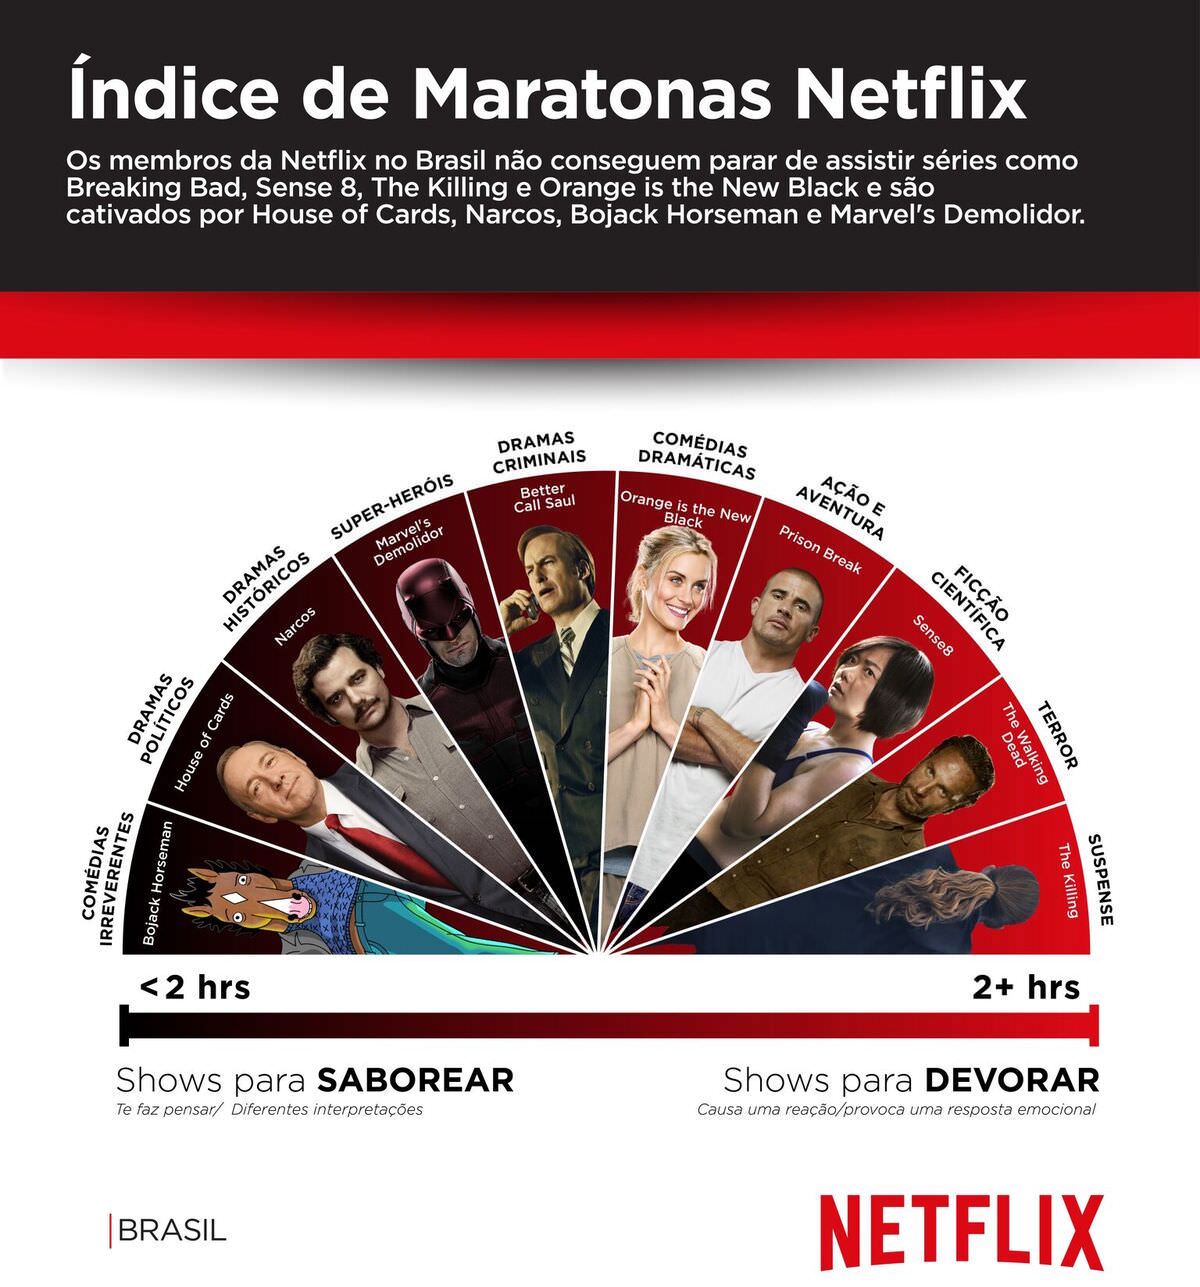 Como você prefere assistir as séries da Netflix, devorando ou saboreando Brasil